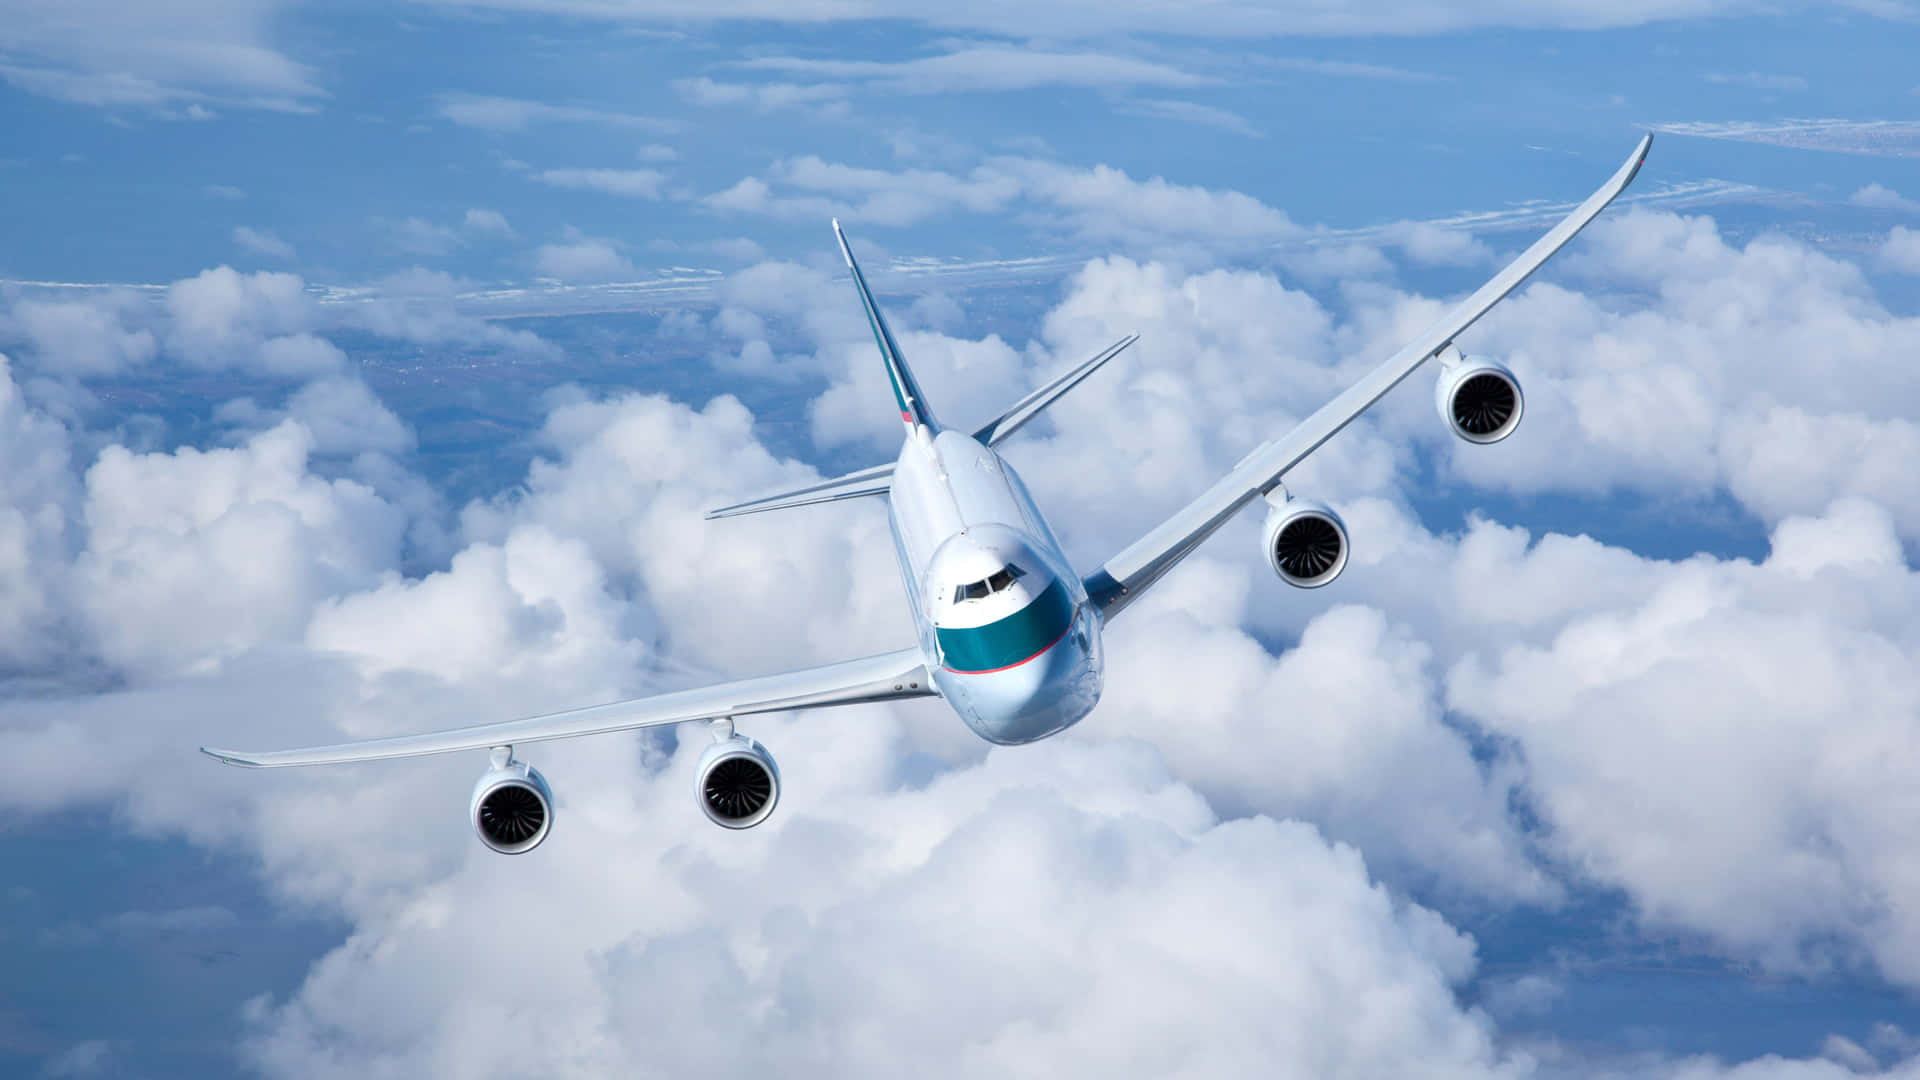 Voandoao Redor Do Mundo Com Um Avião Boeing 747 Como Papel De Parede Do Computador Ou Celular. Papel de Parede